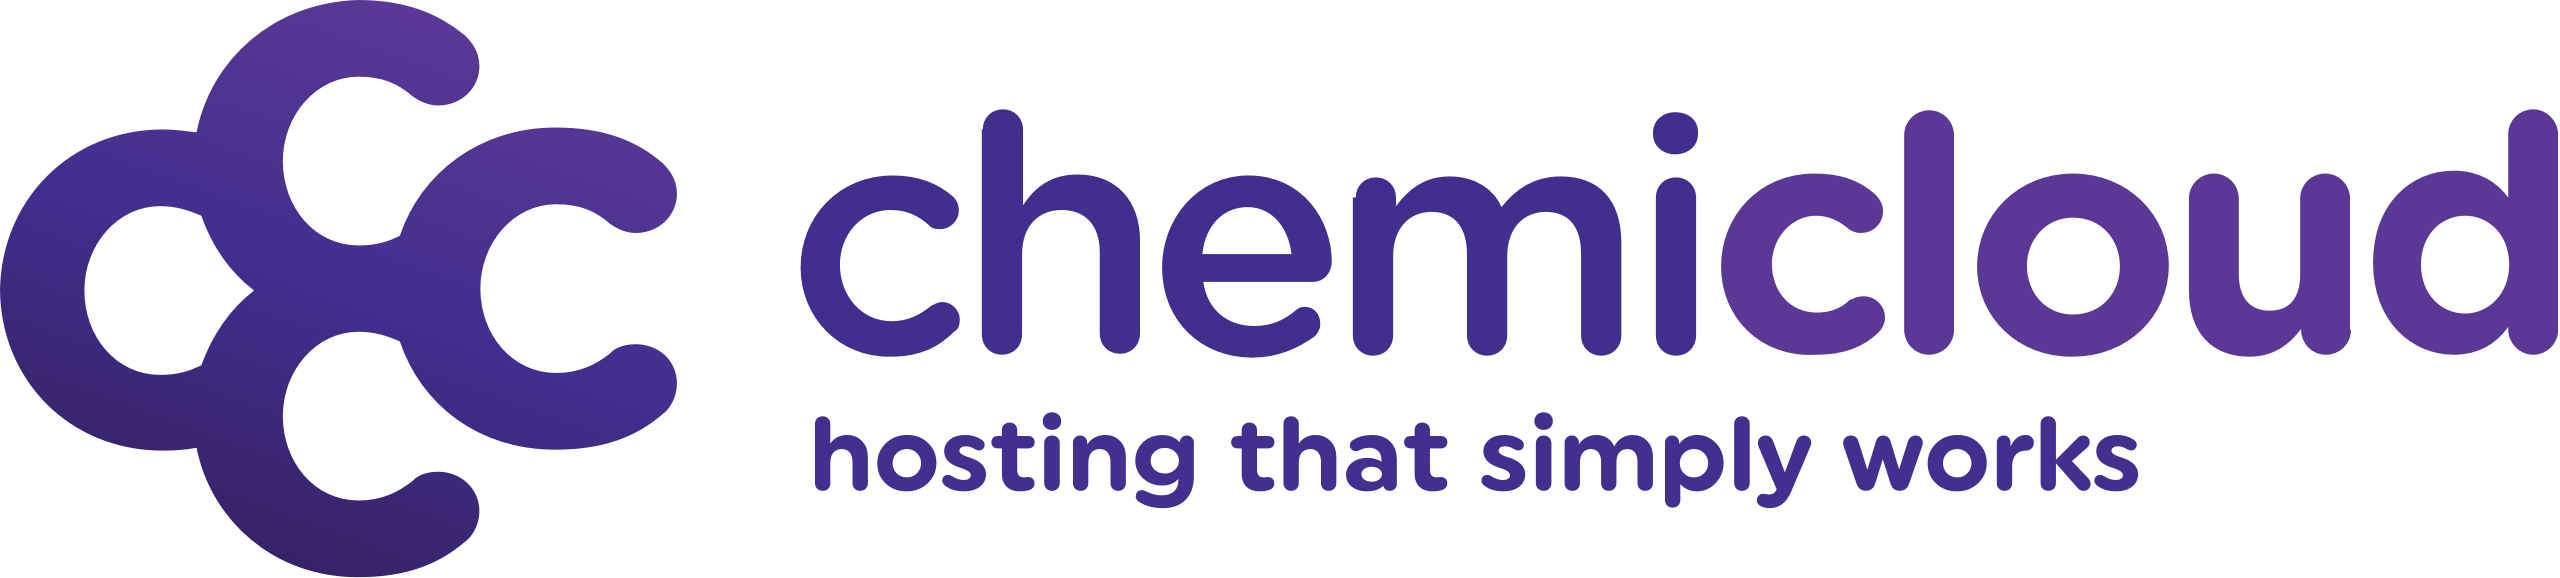 chemicloud-logo